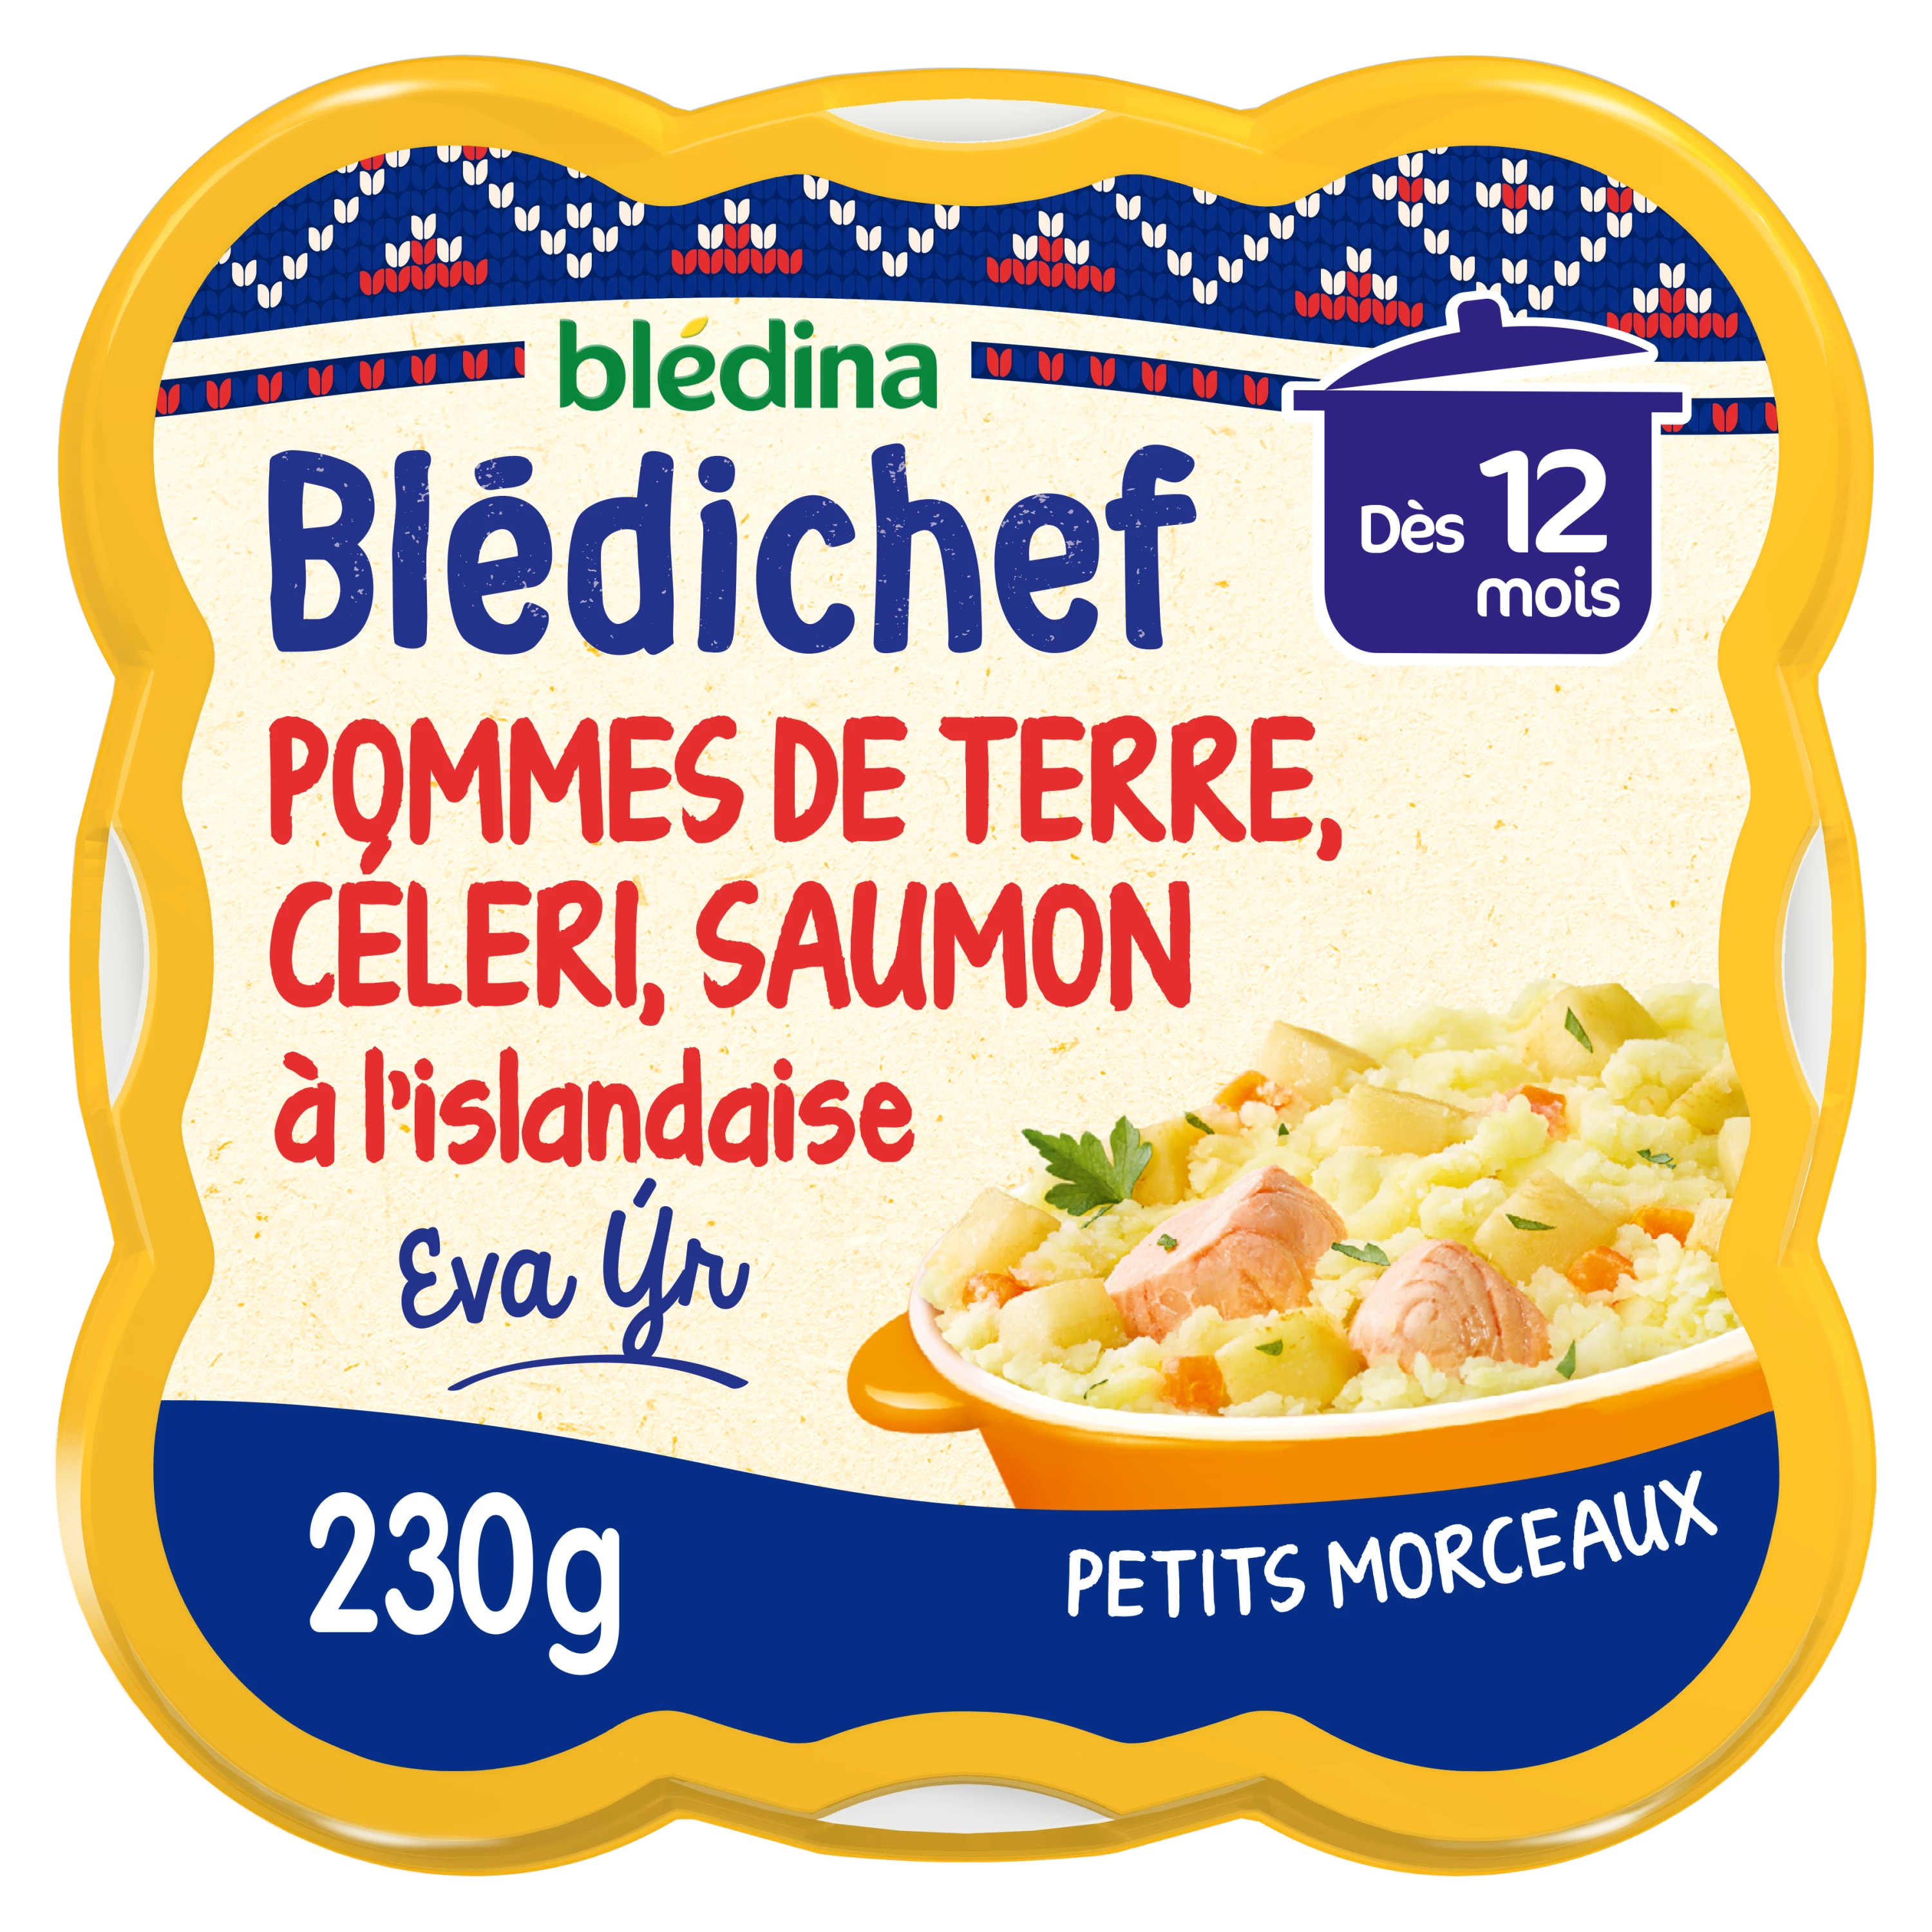 Blédichef Prato para bebé a partir de 12 meses, batatas esmagadas, aipo e salmão islandês 230g - BLEDINA